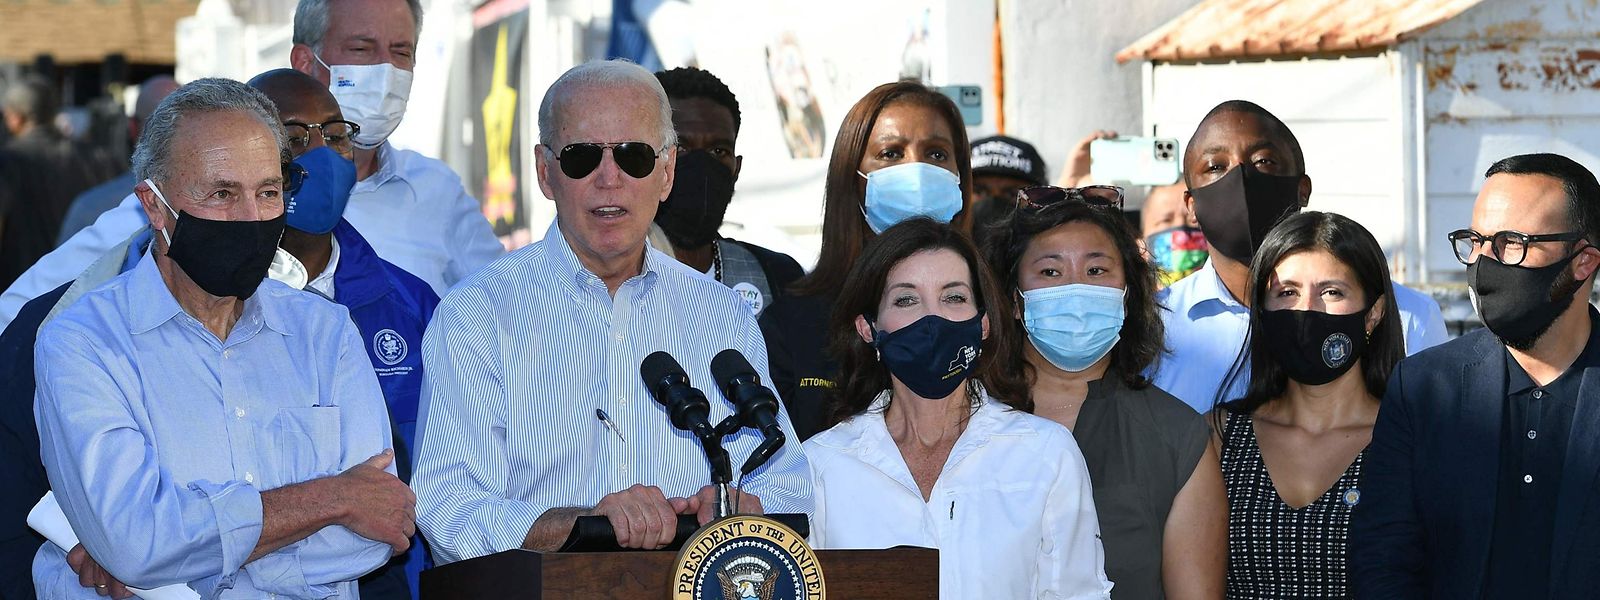 Joe Biden mit Senator Chuck Schumer (l.), der Gouverneurin von New York Kathy Hochul (rechts neben Biden) und dem Bürgermeister von New York, Bill de Blasio (3.v.l.) im vom Hurrikan betroffenen Stadtviertel Queens.  